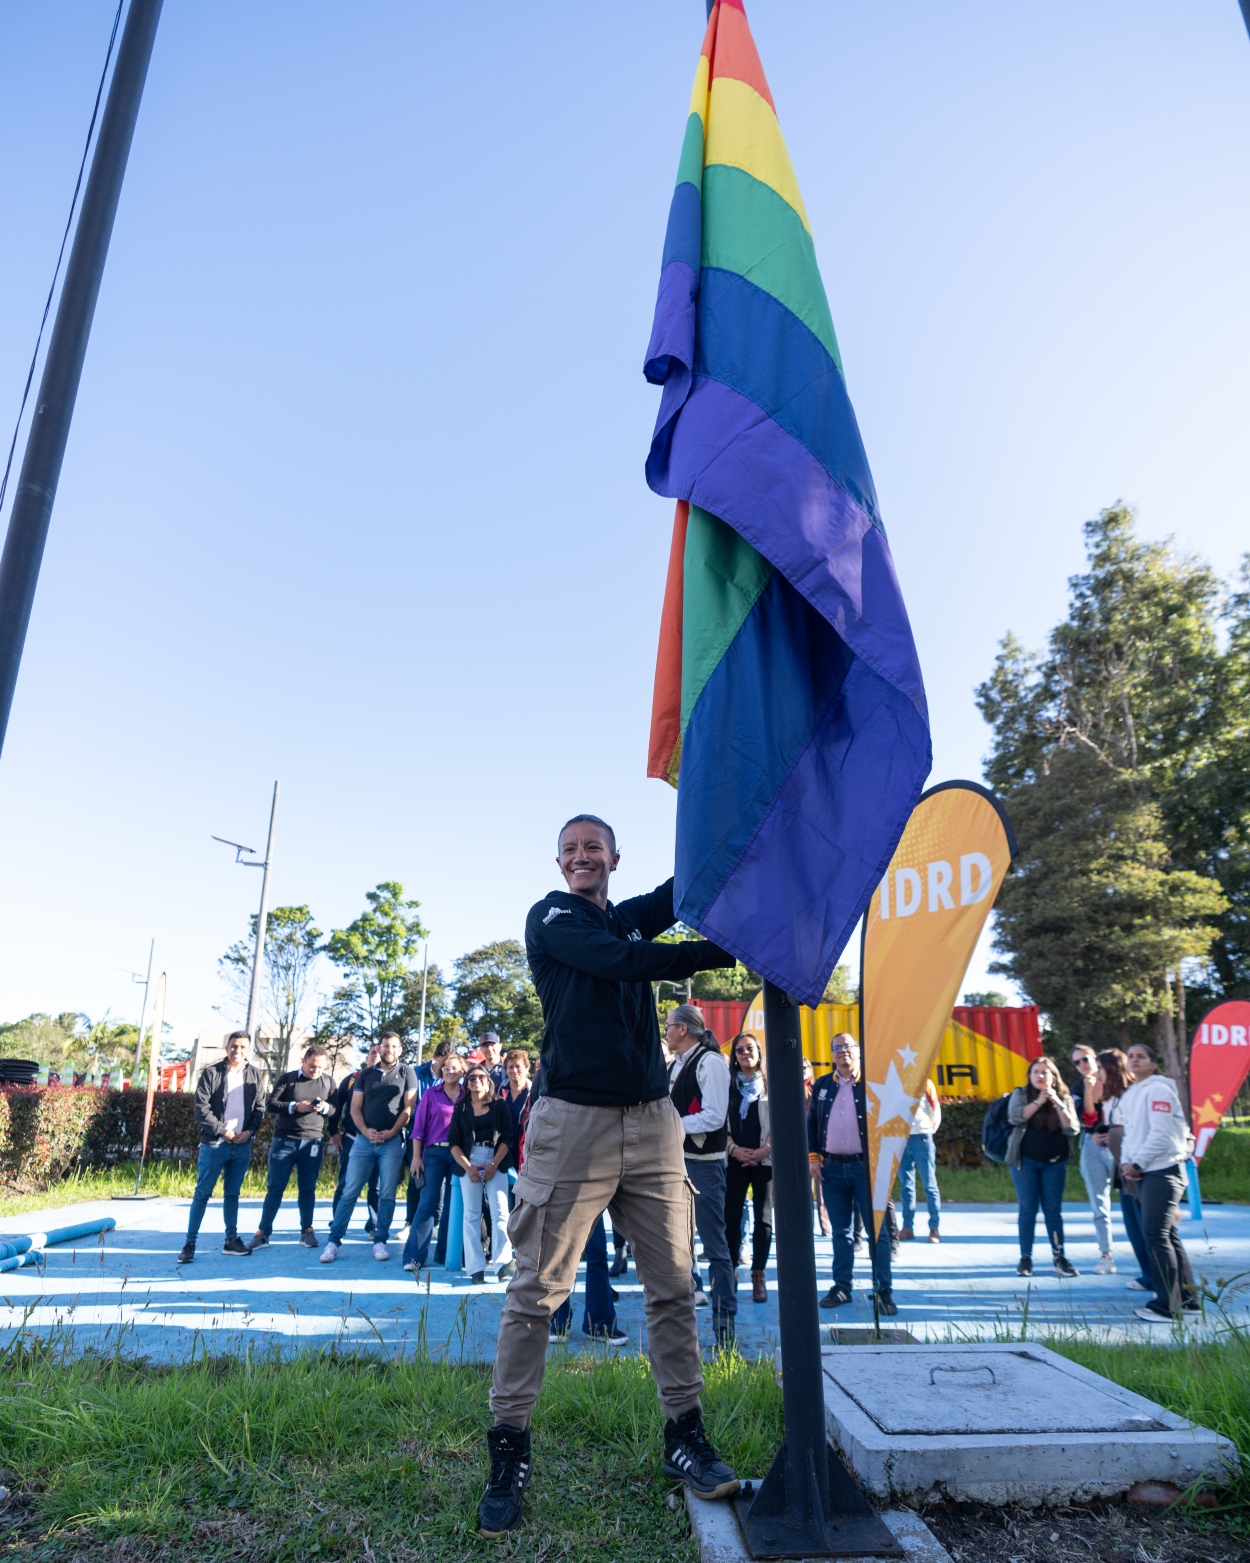 IDRD apoya la lucha de la comunidad LGBTIQ+ en Bogotá y tiene quien los defienda